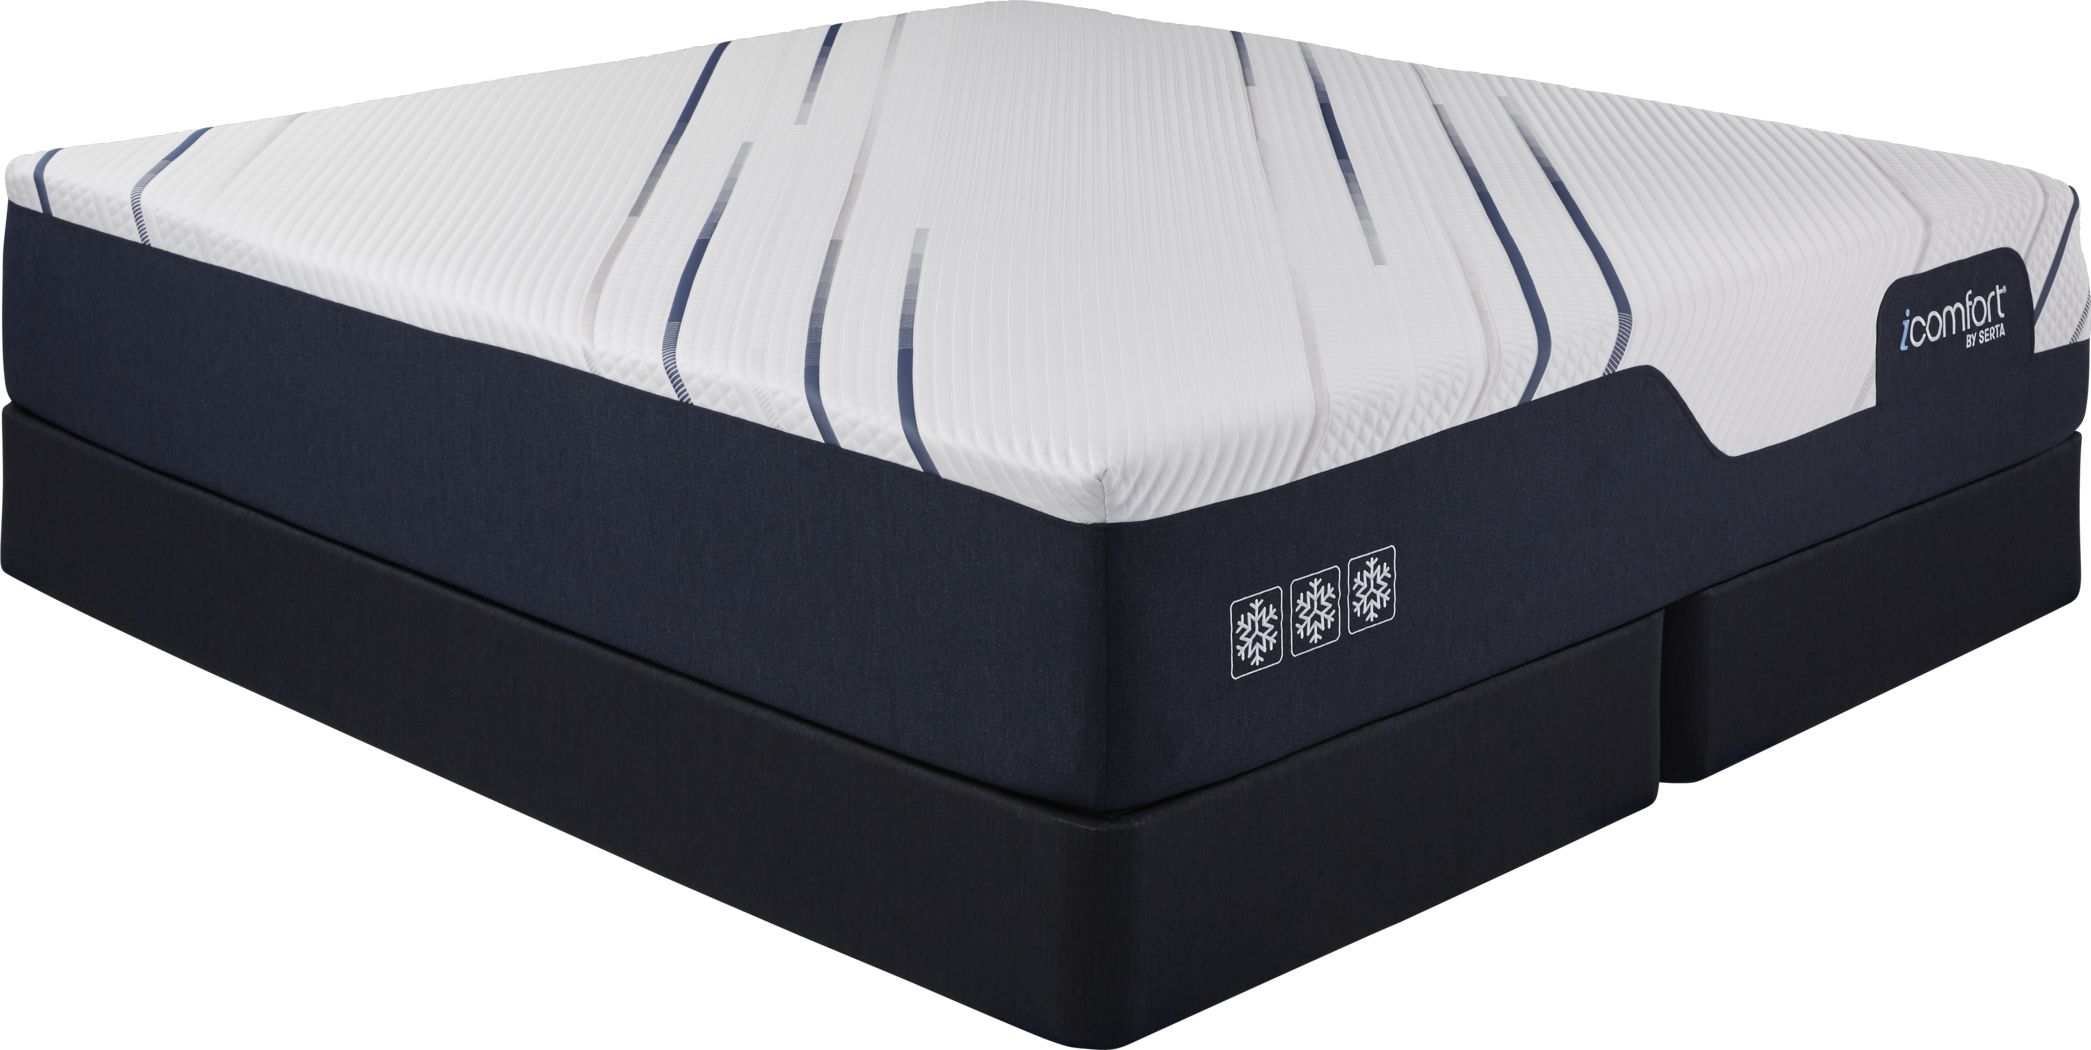 mattress similar to icomfort 3000 split king